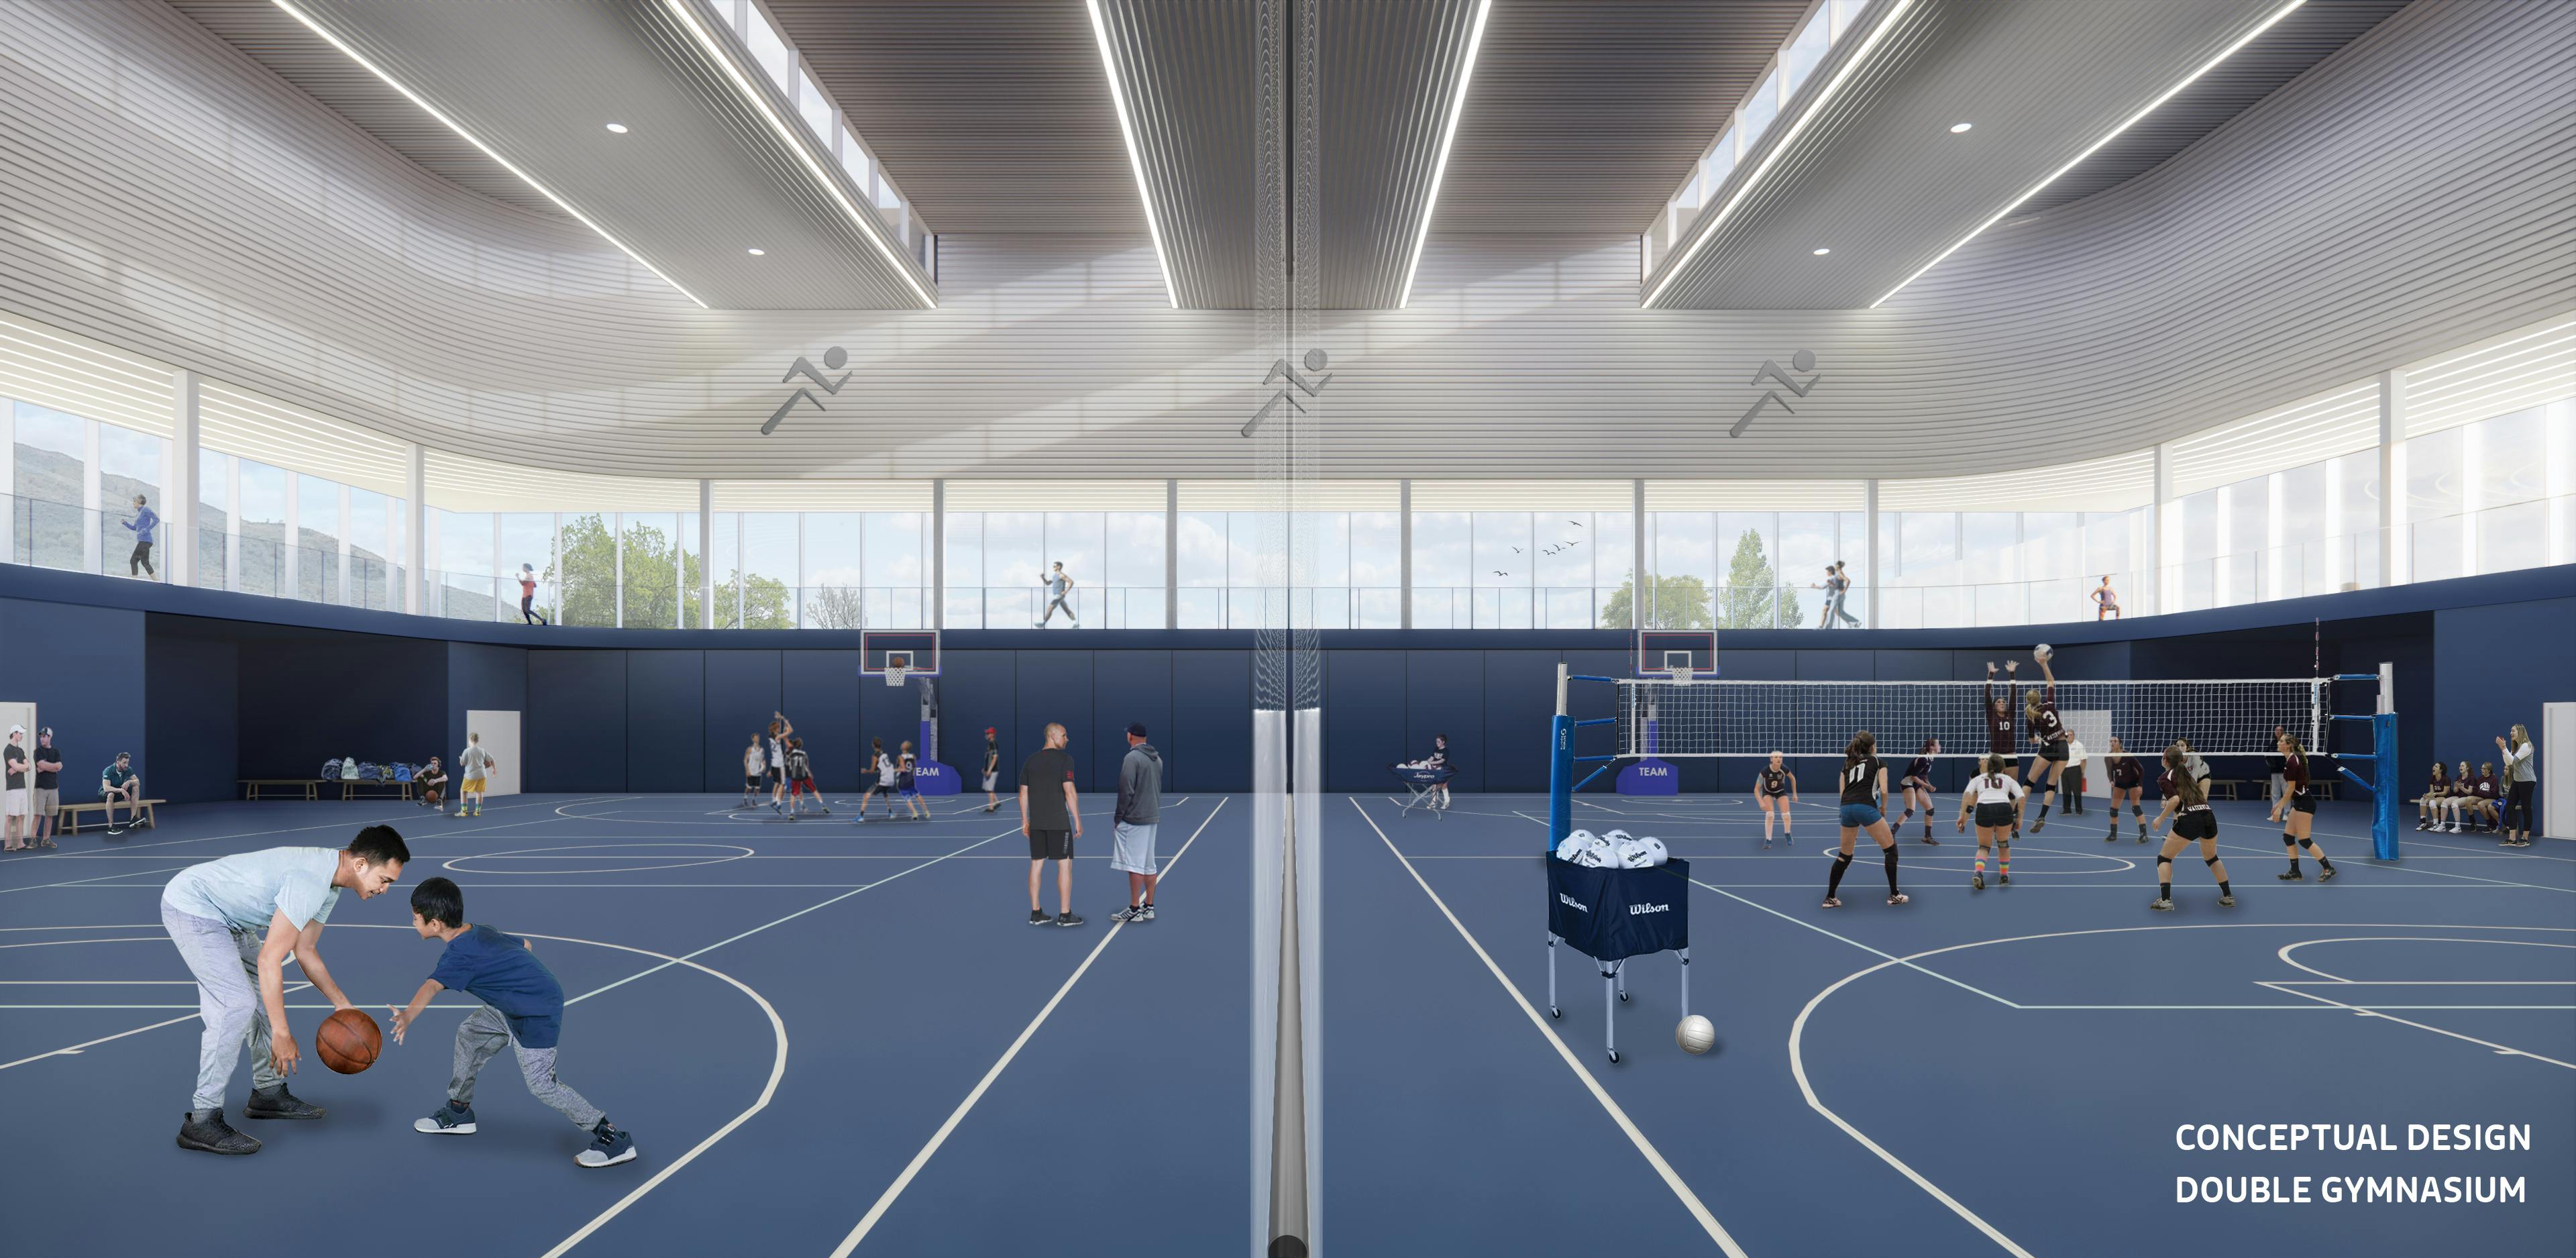 Double gymnasium conceptual design